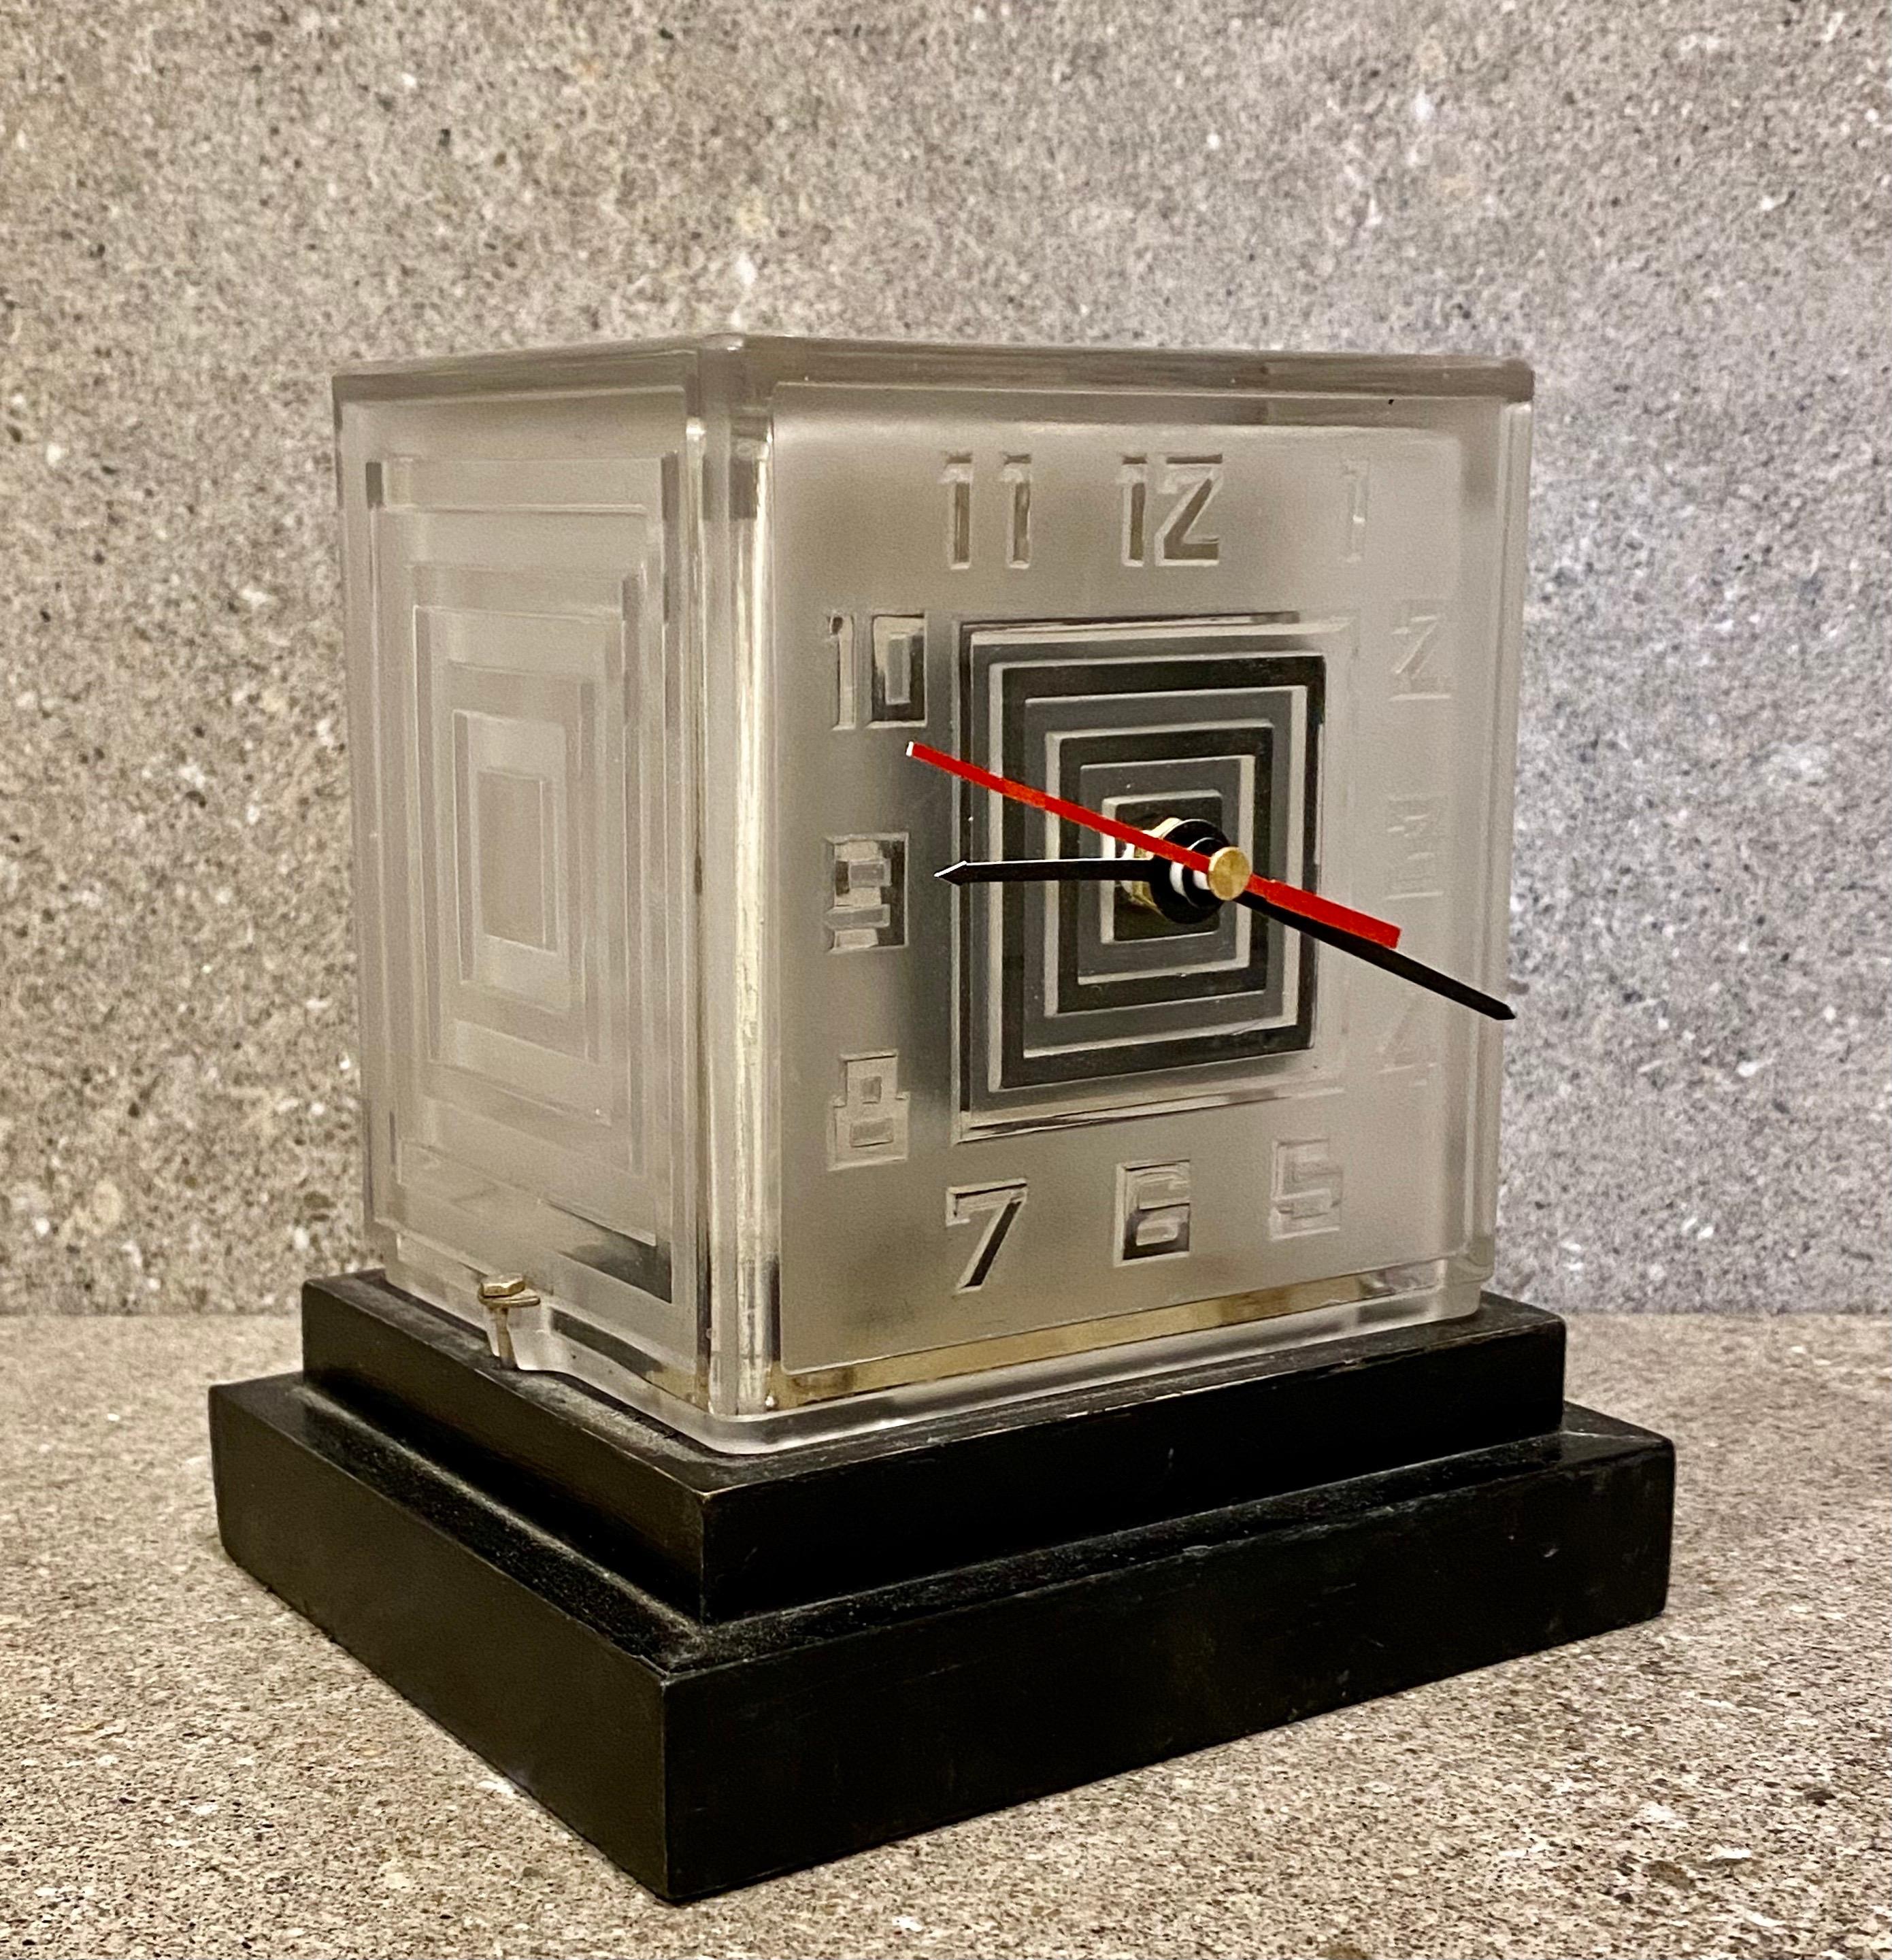 Une horloge Art Déco moderniste Bulle par P.M.Favre. L'une des premières horloges à piles des années 1930. Le boîtier en verre dépoli comporte des chiffres stylisés gravés. La plinthe en bois à gradins est ébénisée.
Bien que la taille de la pile